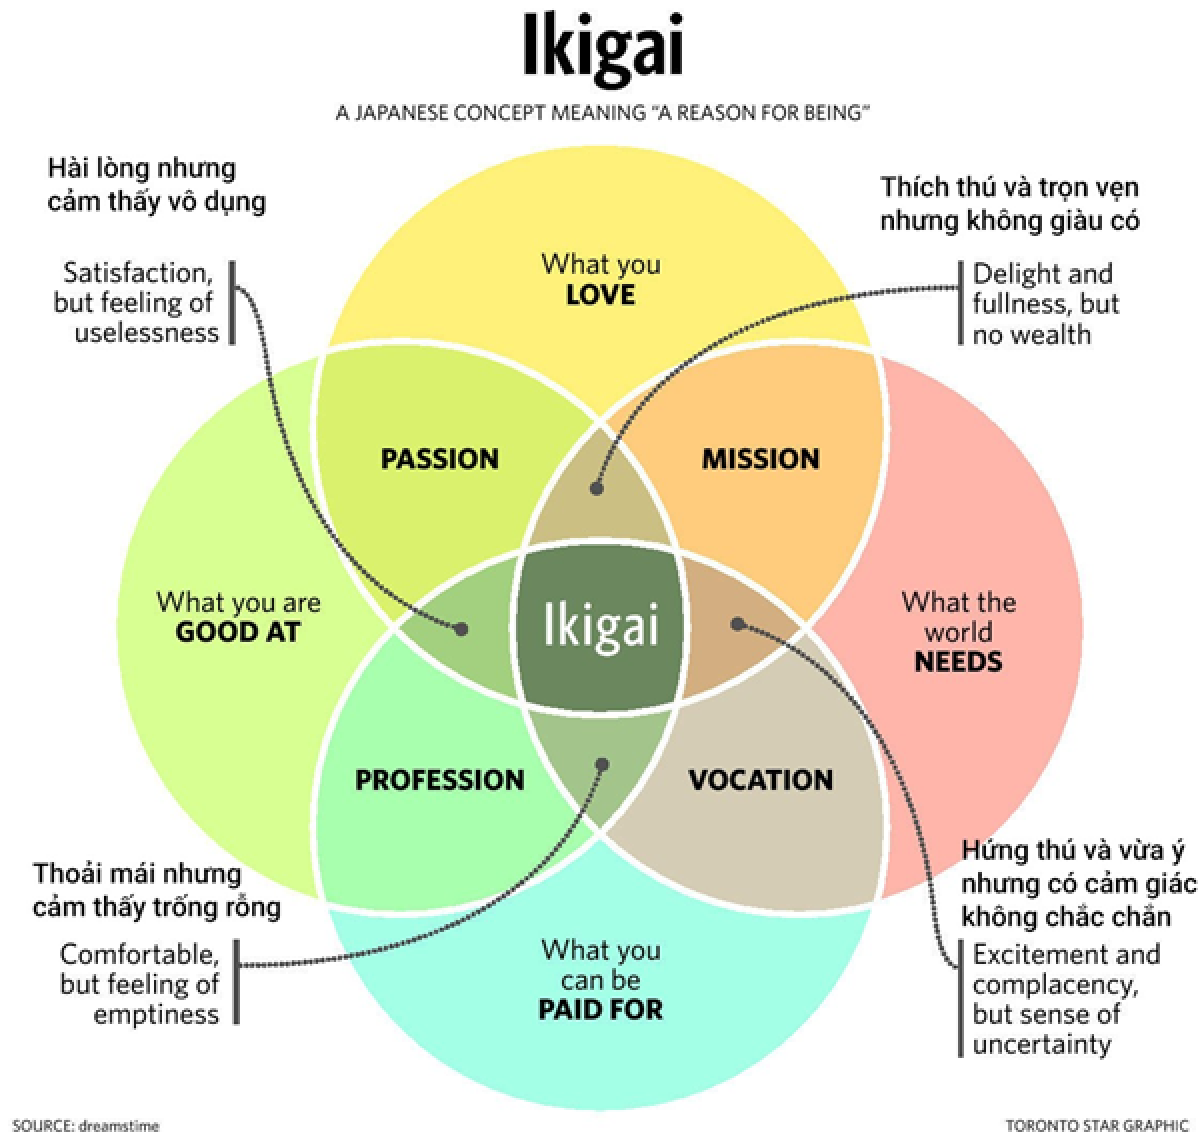 Mô hình Ikigai đang trở nên phổ biến để định hướng nghề nghiệp và giảm sai lầm khi chọn nghề